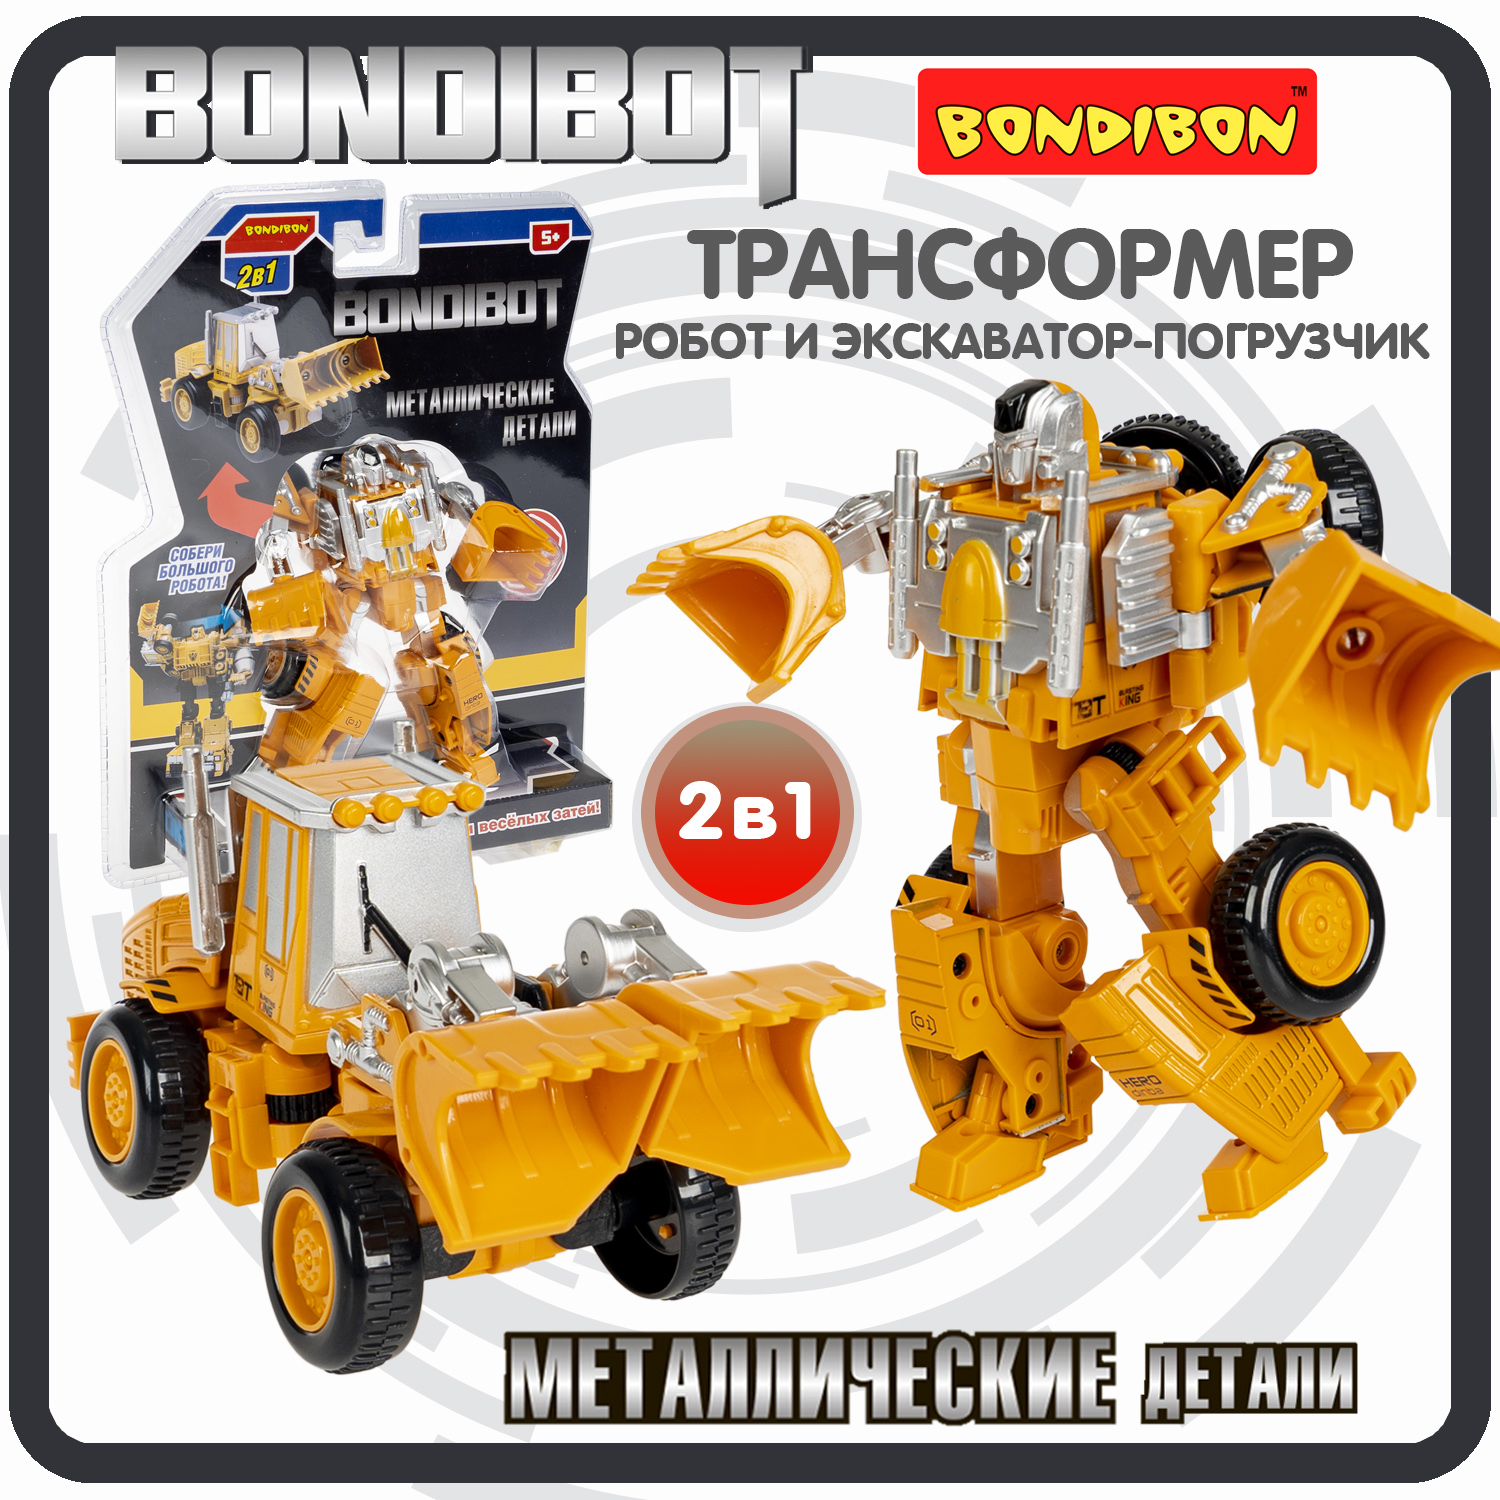 Робот трансформер 2в1 Bondibon BONDIBOT машинка экскаватор-погрузчик bondibon трансформер bondibot 2 в 1 робот трактор с ковшом